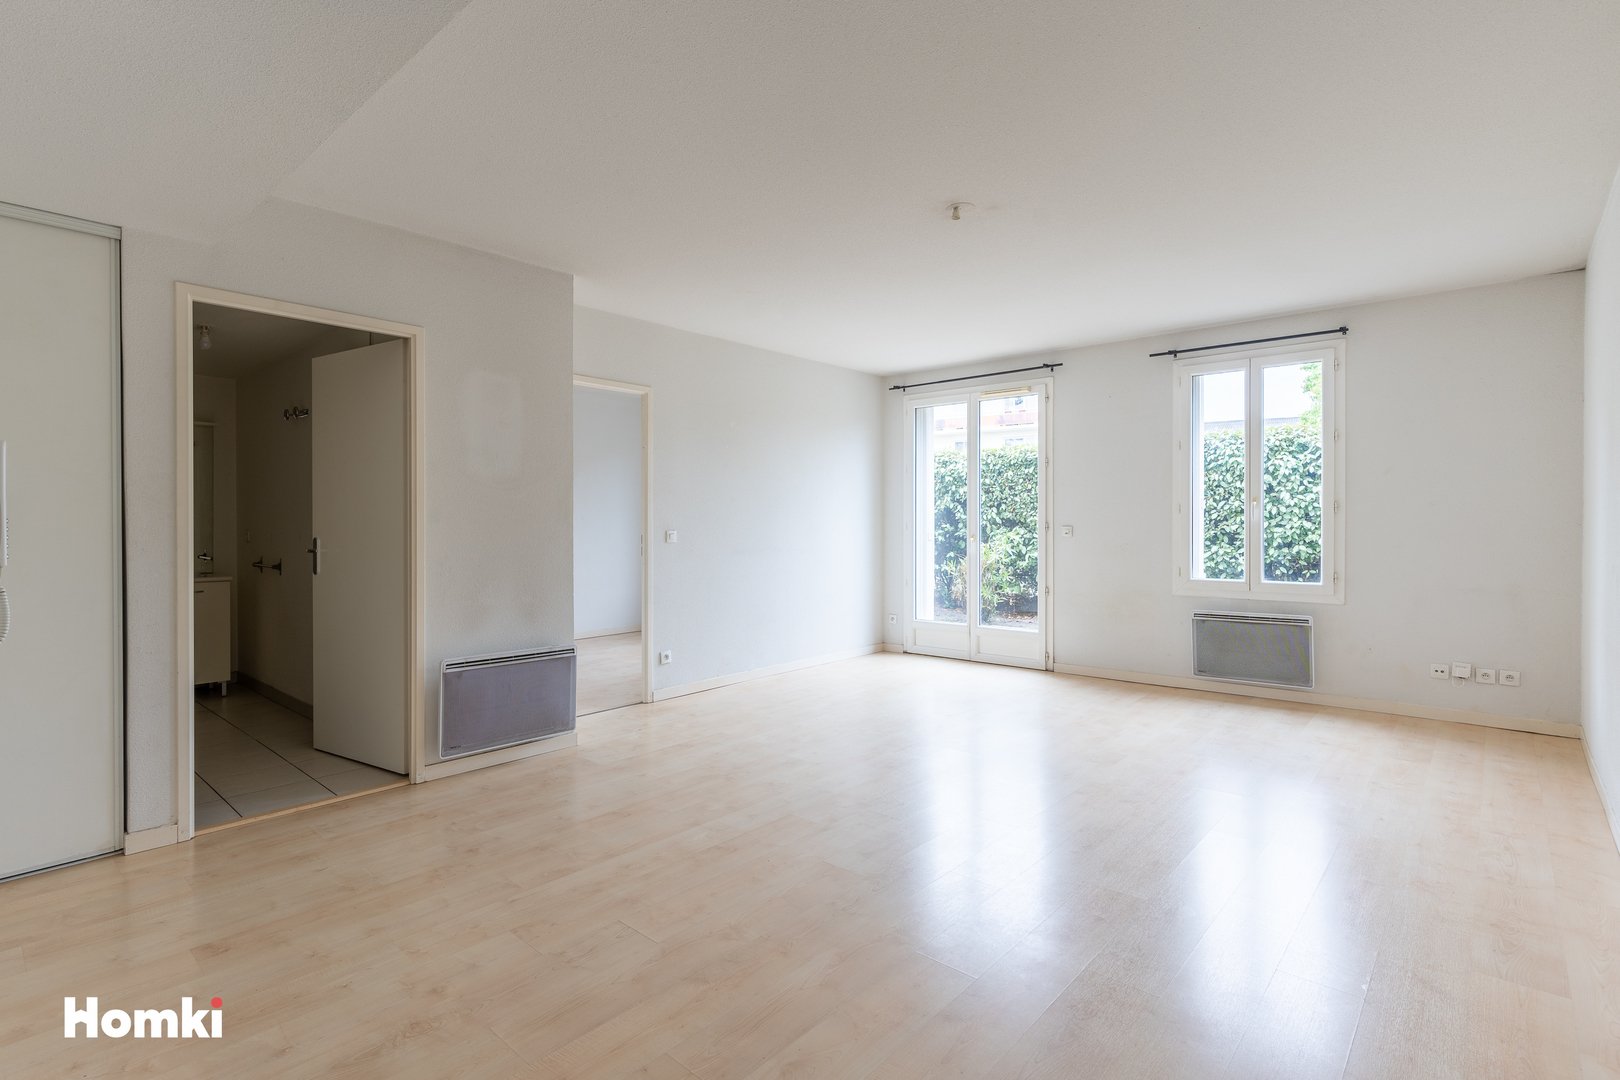 Homki - Vente Appartement  de 47.0 m² à Mérignac 33700